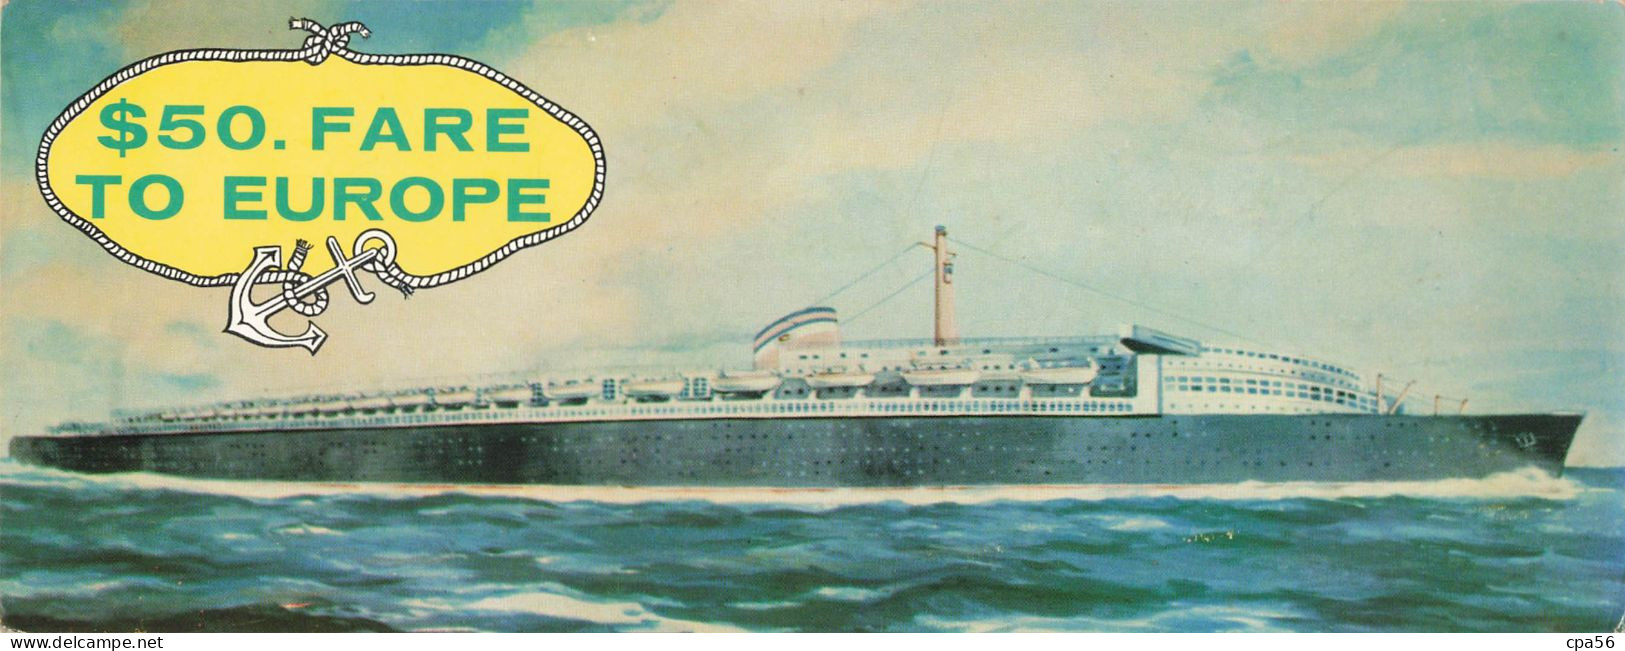 CARTE DOUBLE PANORAMIQUE PAQUEBOT - Publicité Sea Coach Transatlantic Lines - $50. FARE TO EUROPE - Hotel Dixie - Reclame